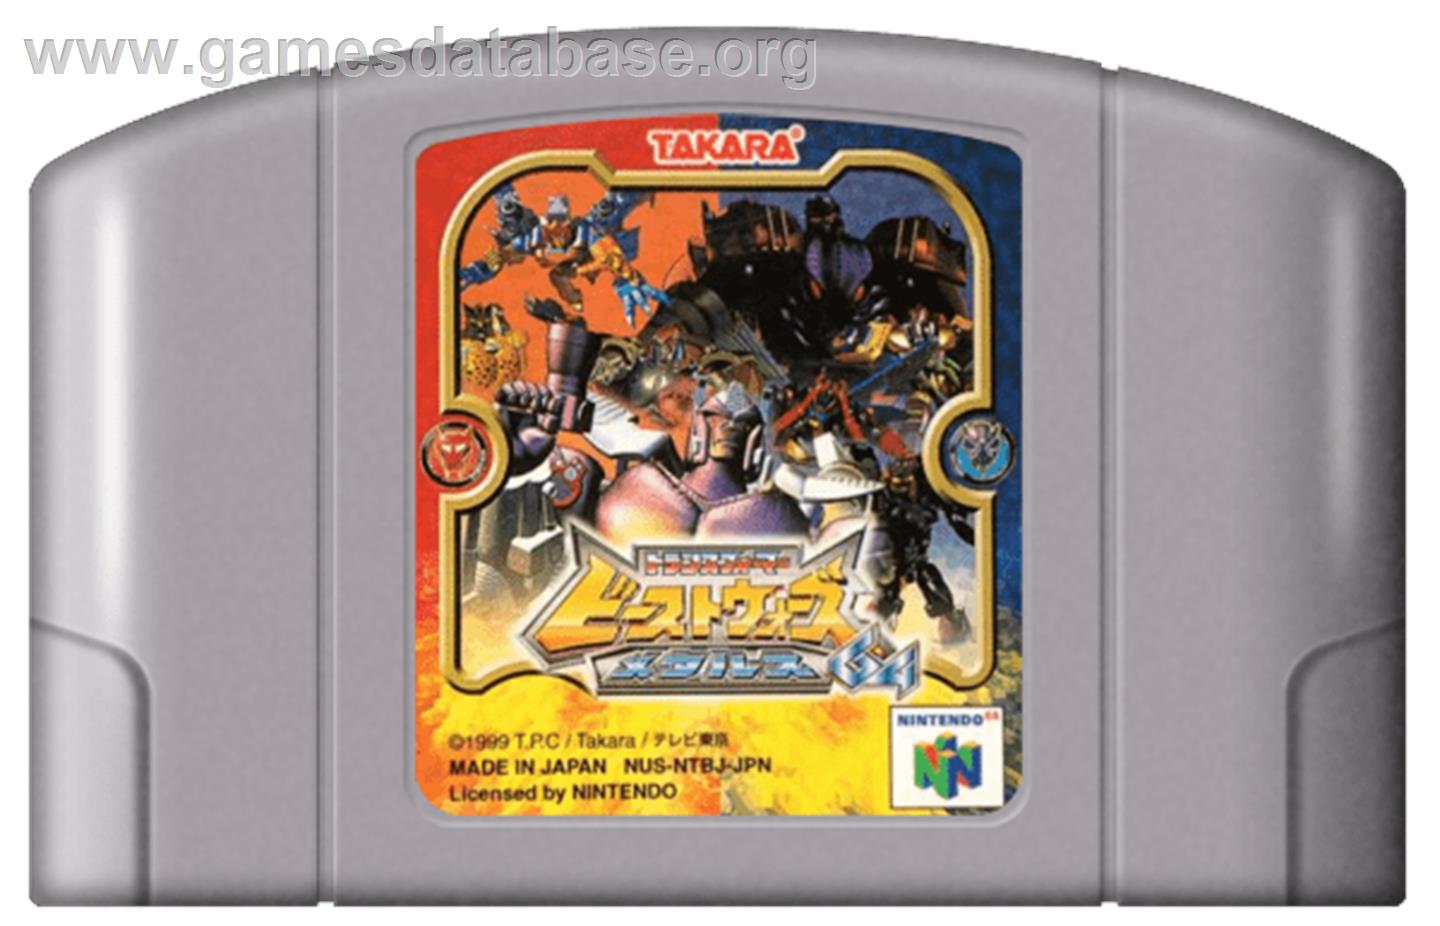 Transformers: Beast Wars Metals 64 - Nintendo N64 - Artwork - Cartridge